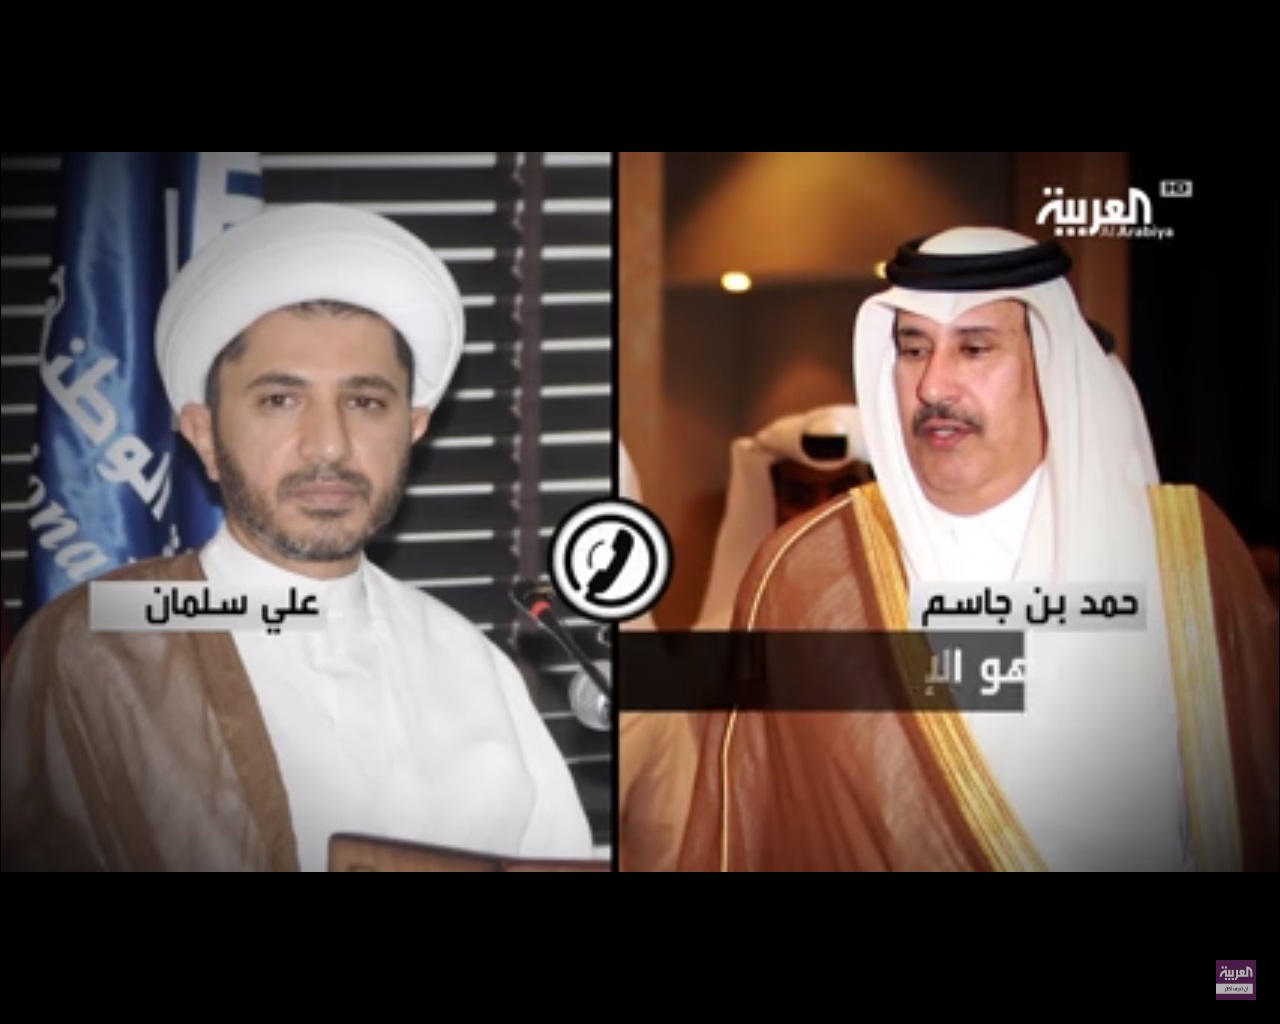 وثائقي .. تسلسل زمني للأزمة مع قطر وتاريخ الدوحة في الانقلاب على الحكم